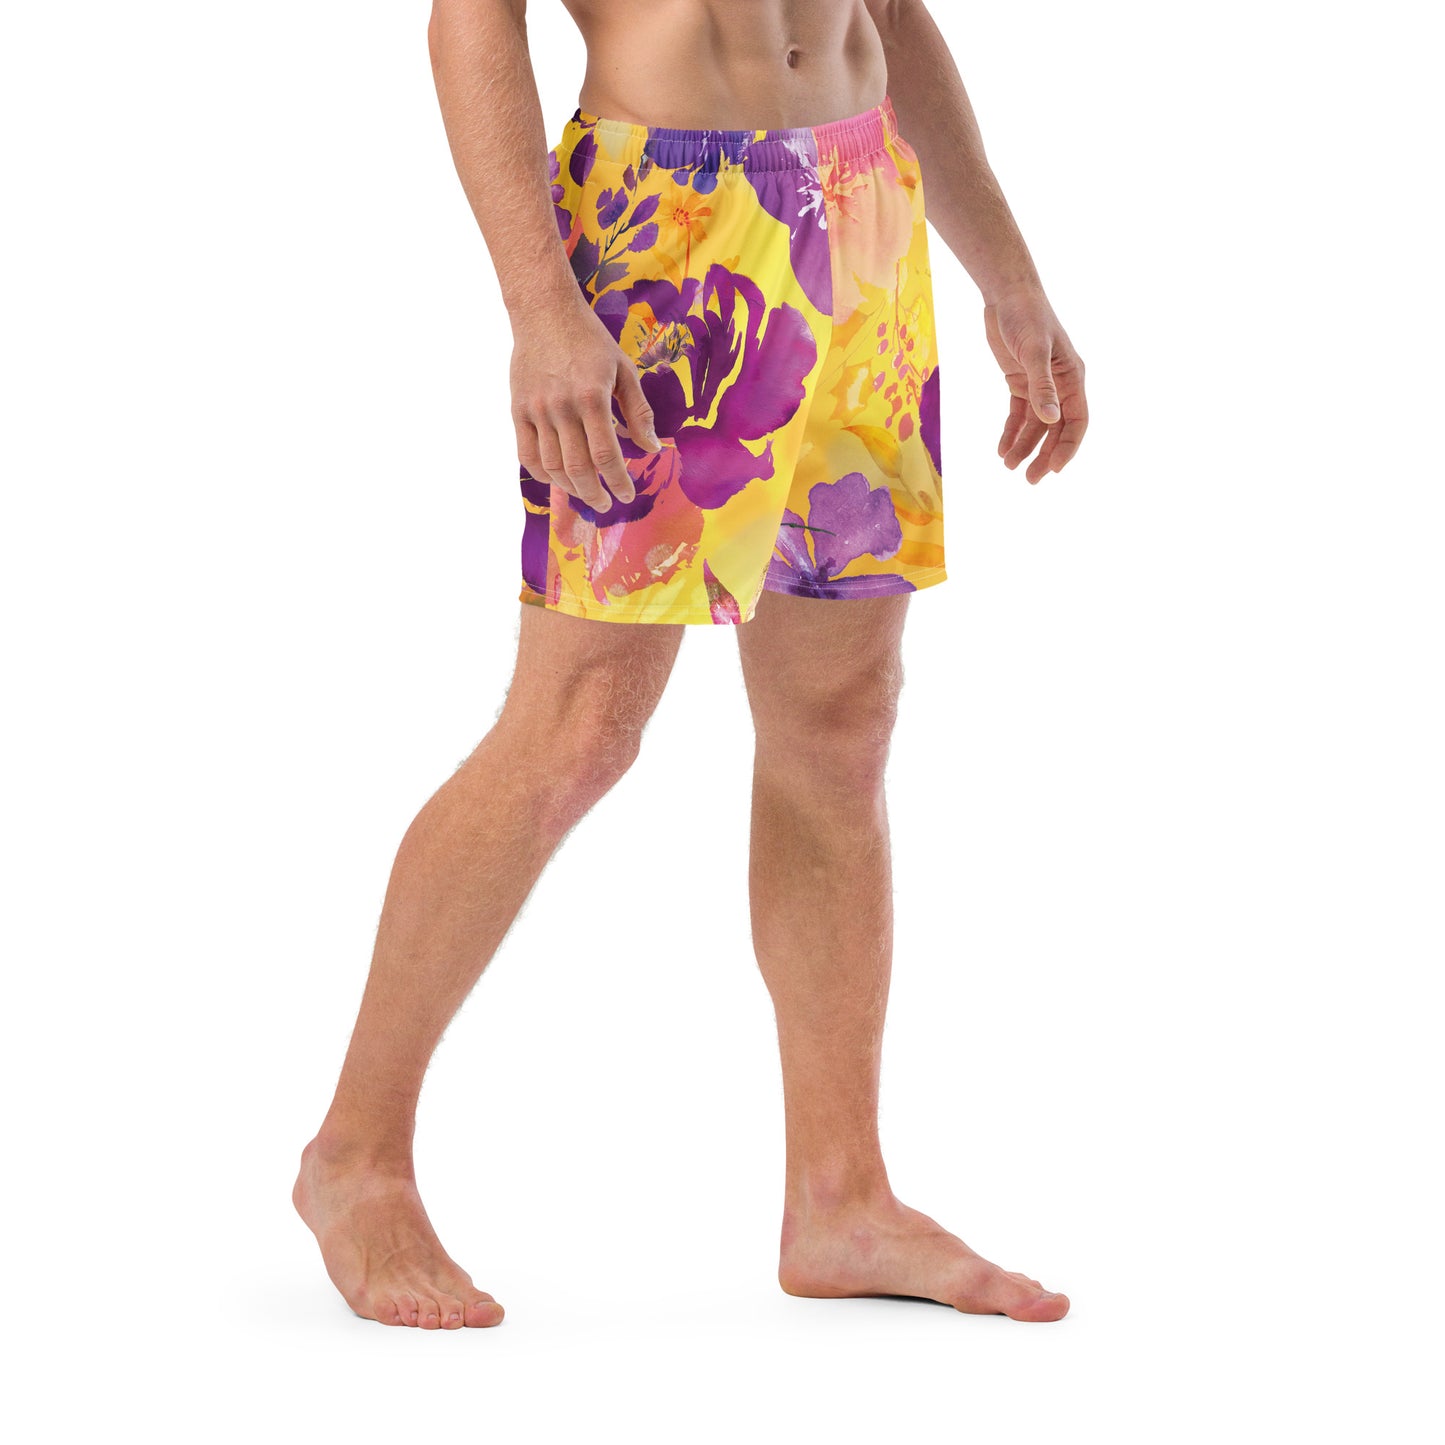 SEMESTER - Men's swim trunks